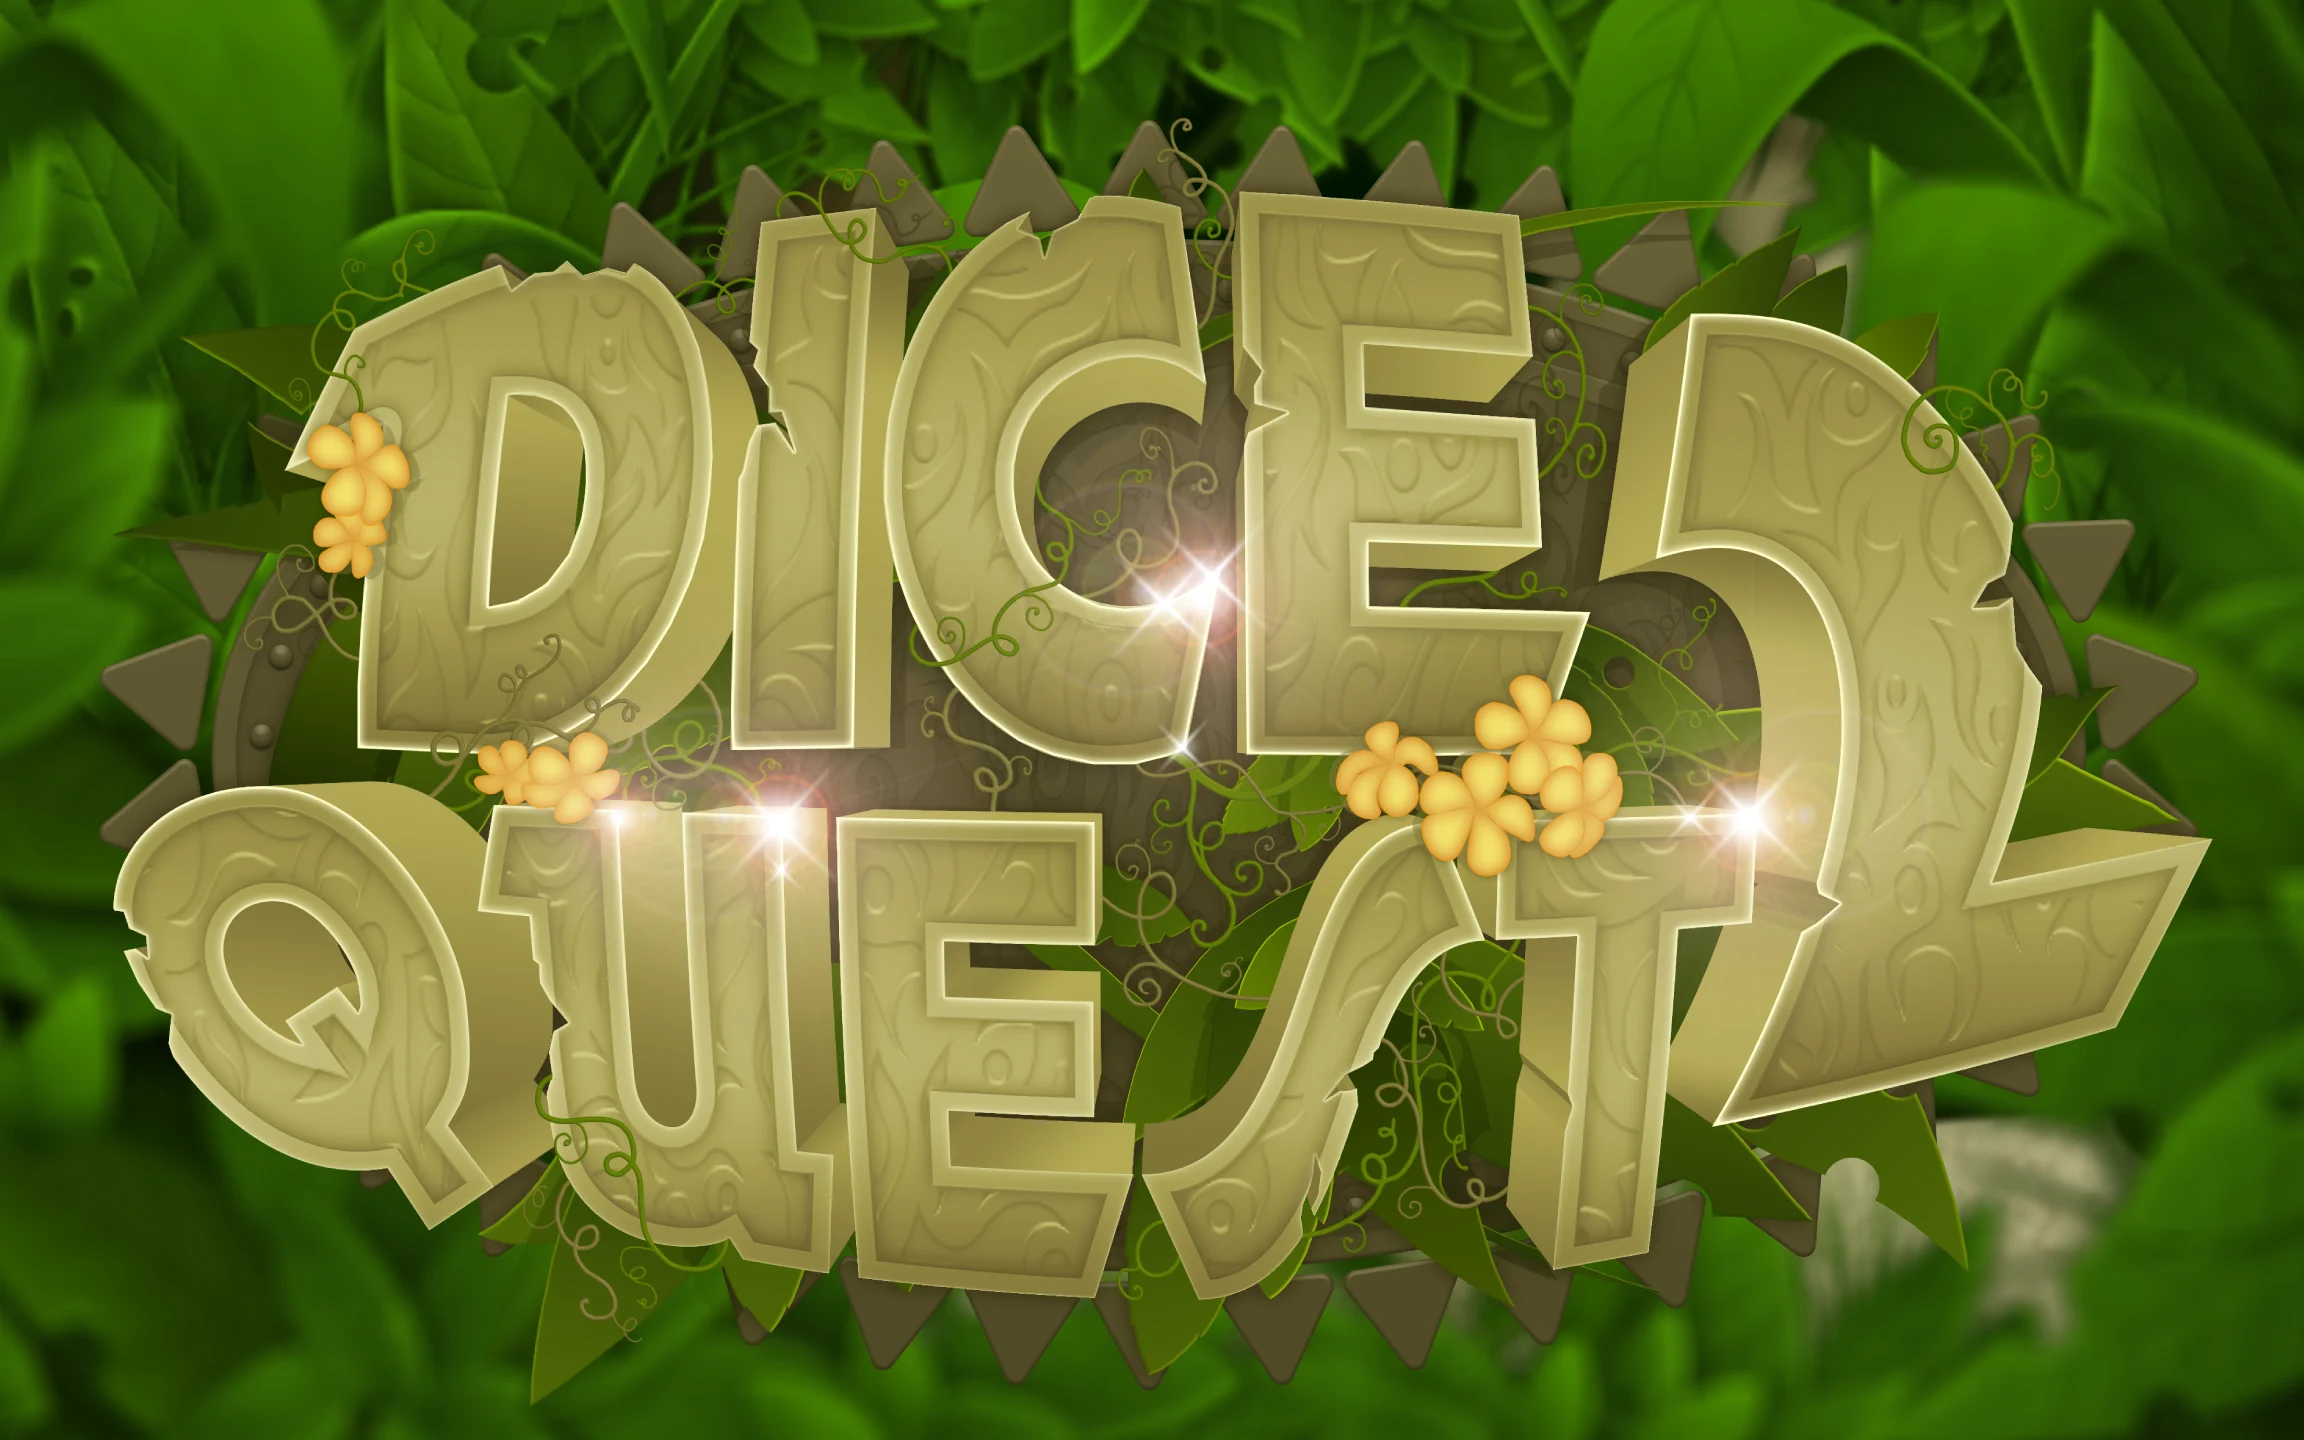 Spielen Sie Dice Quest 2 auf Starcasino.be-Online-Casino